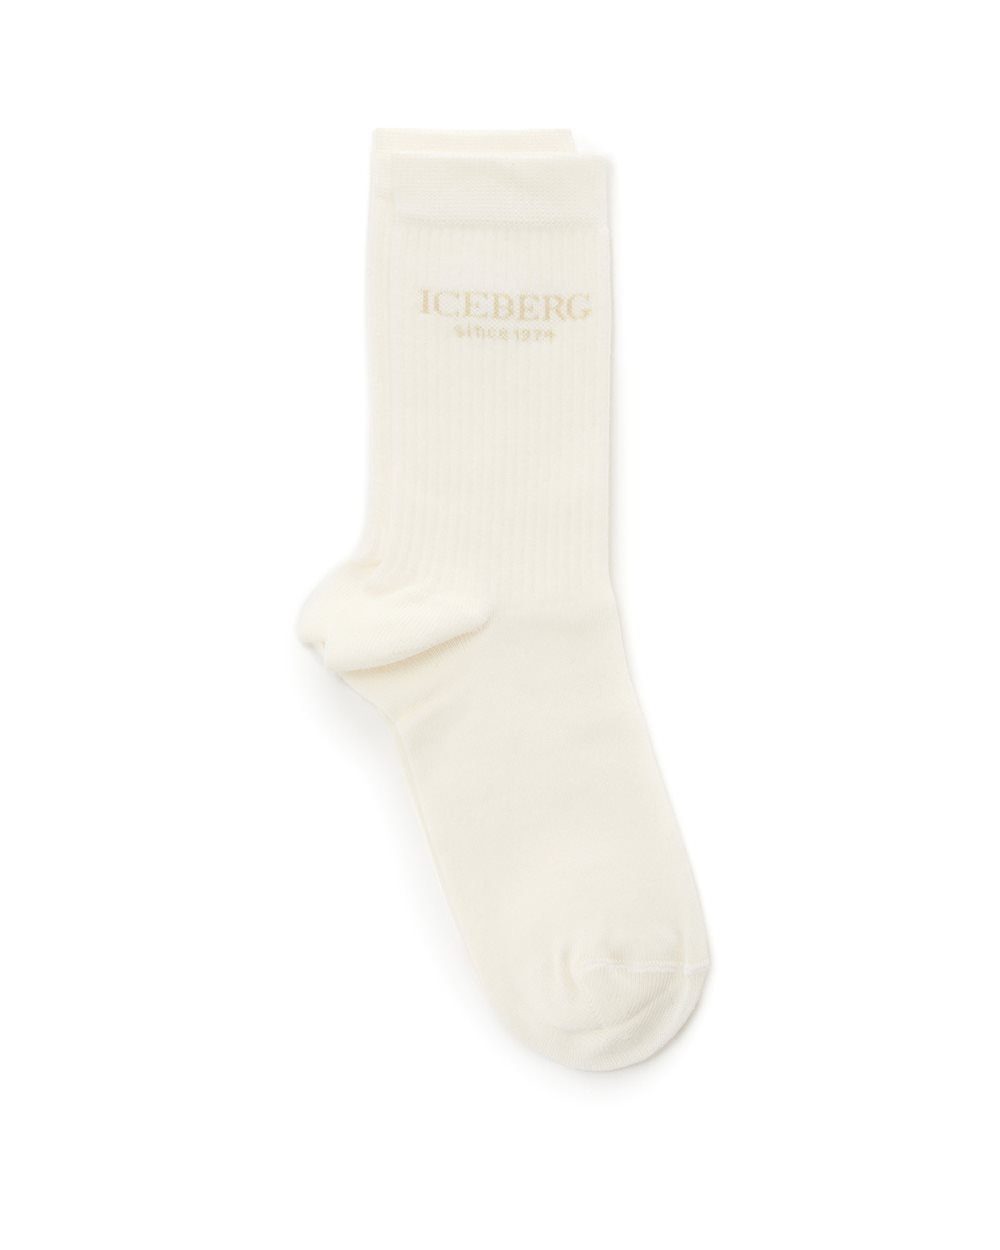 Cotton socks with logo - socks | Iceberg - Official Website